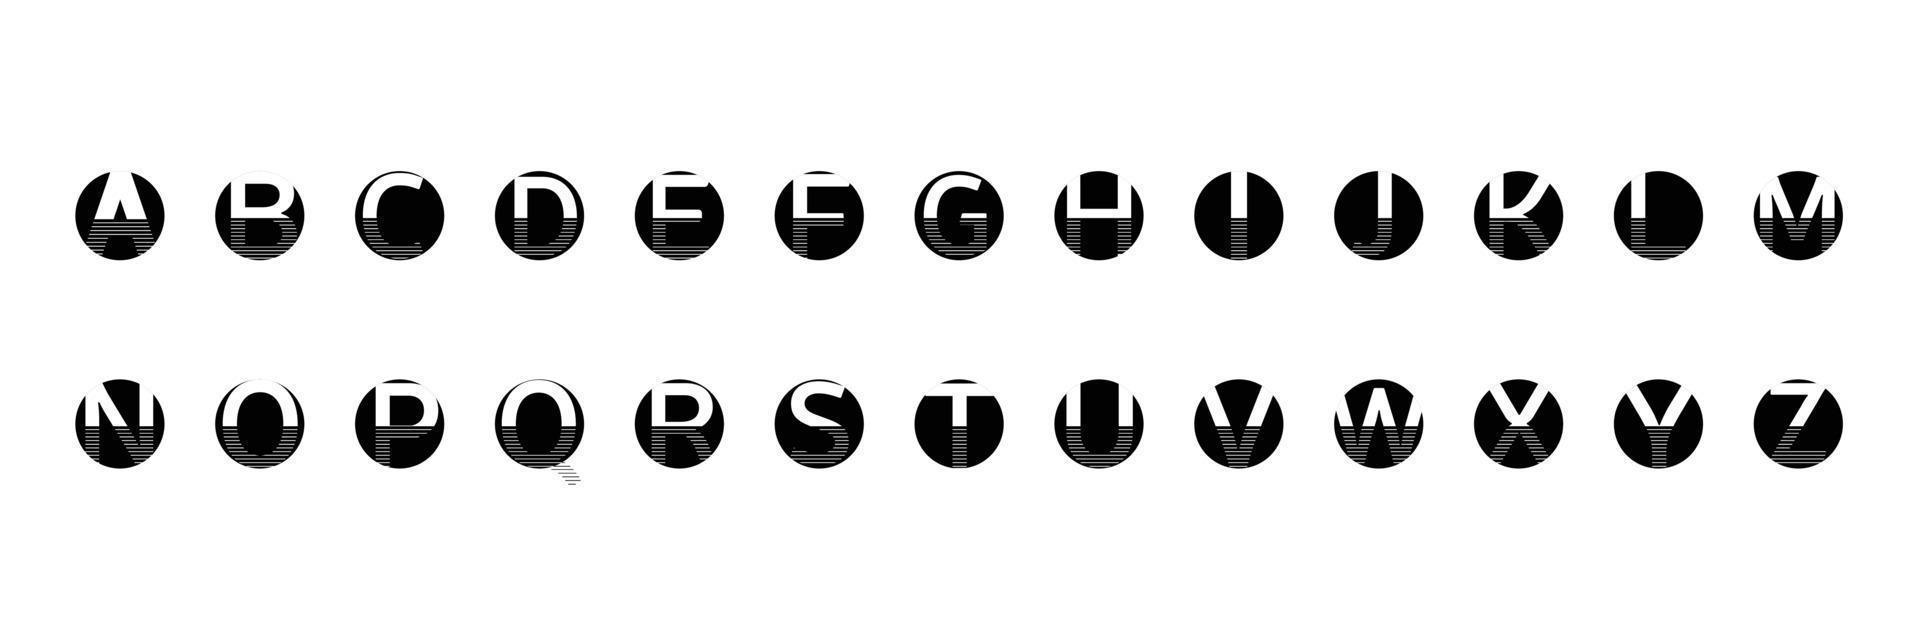 englisches alphabet schwarze kreise mit linie auf weißem hintergrund vektor